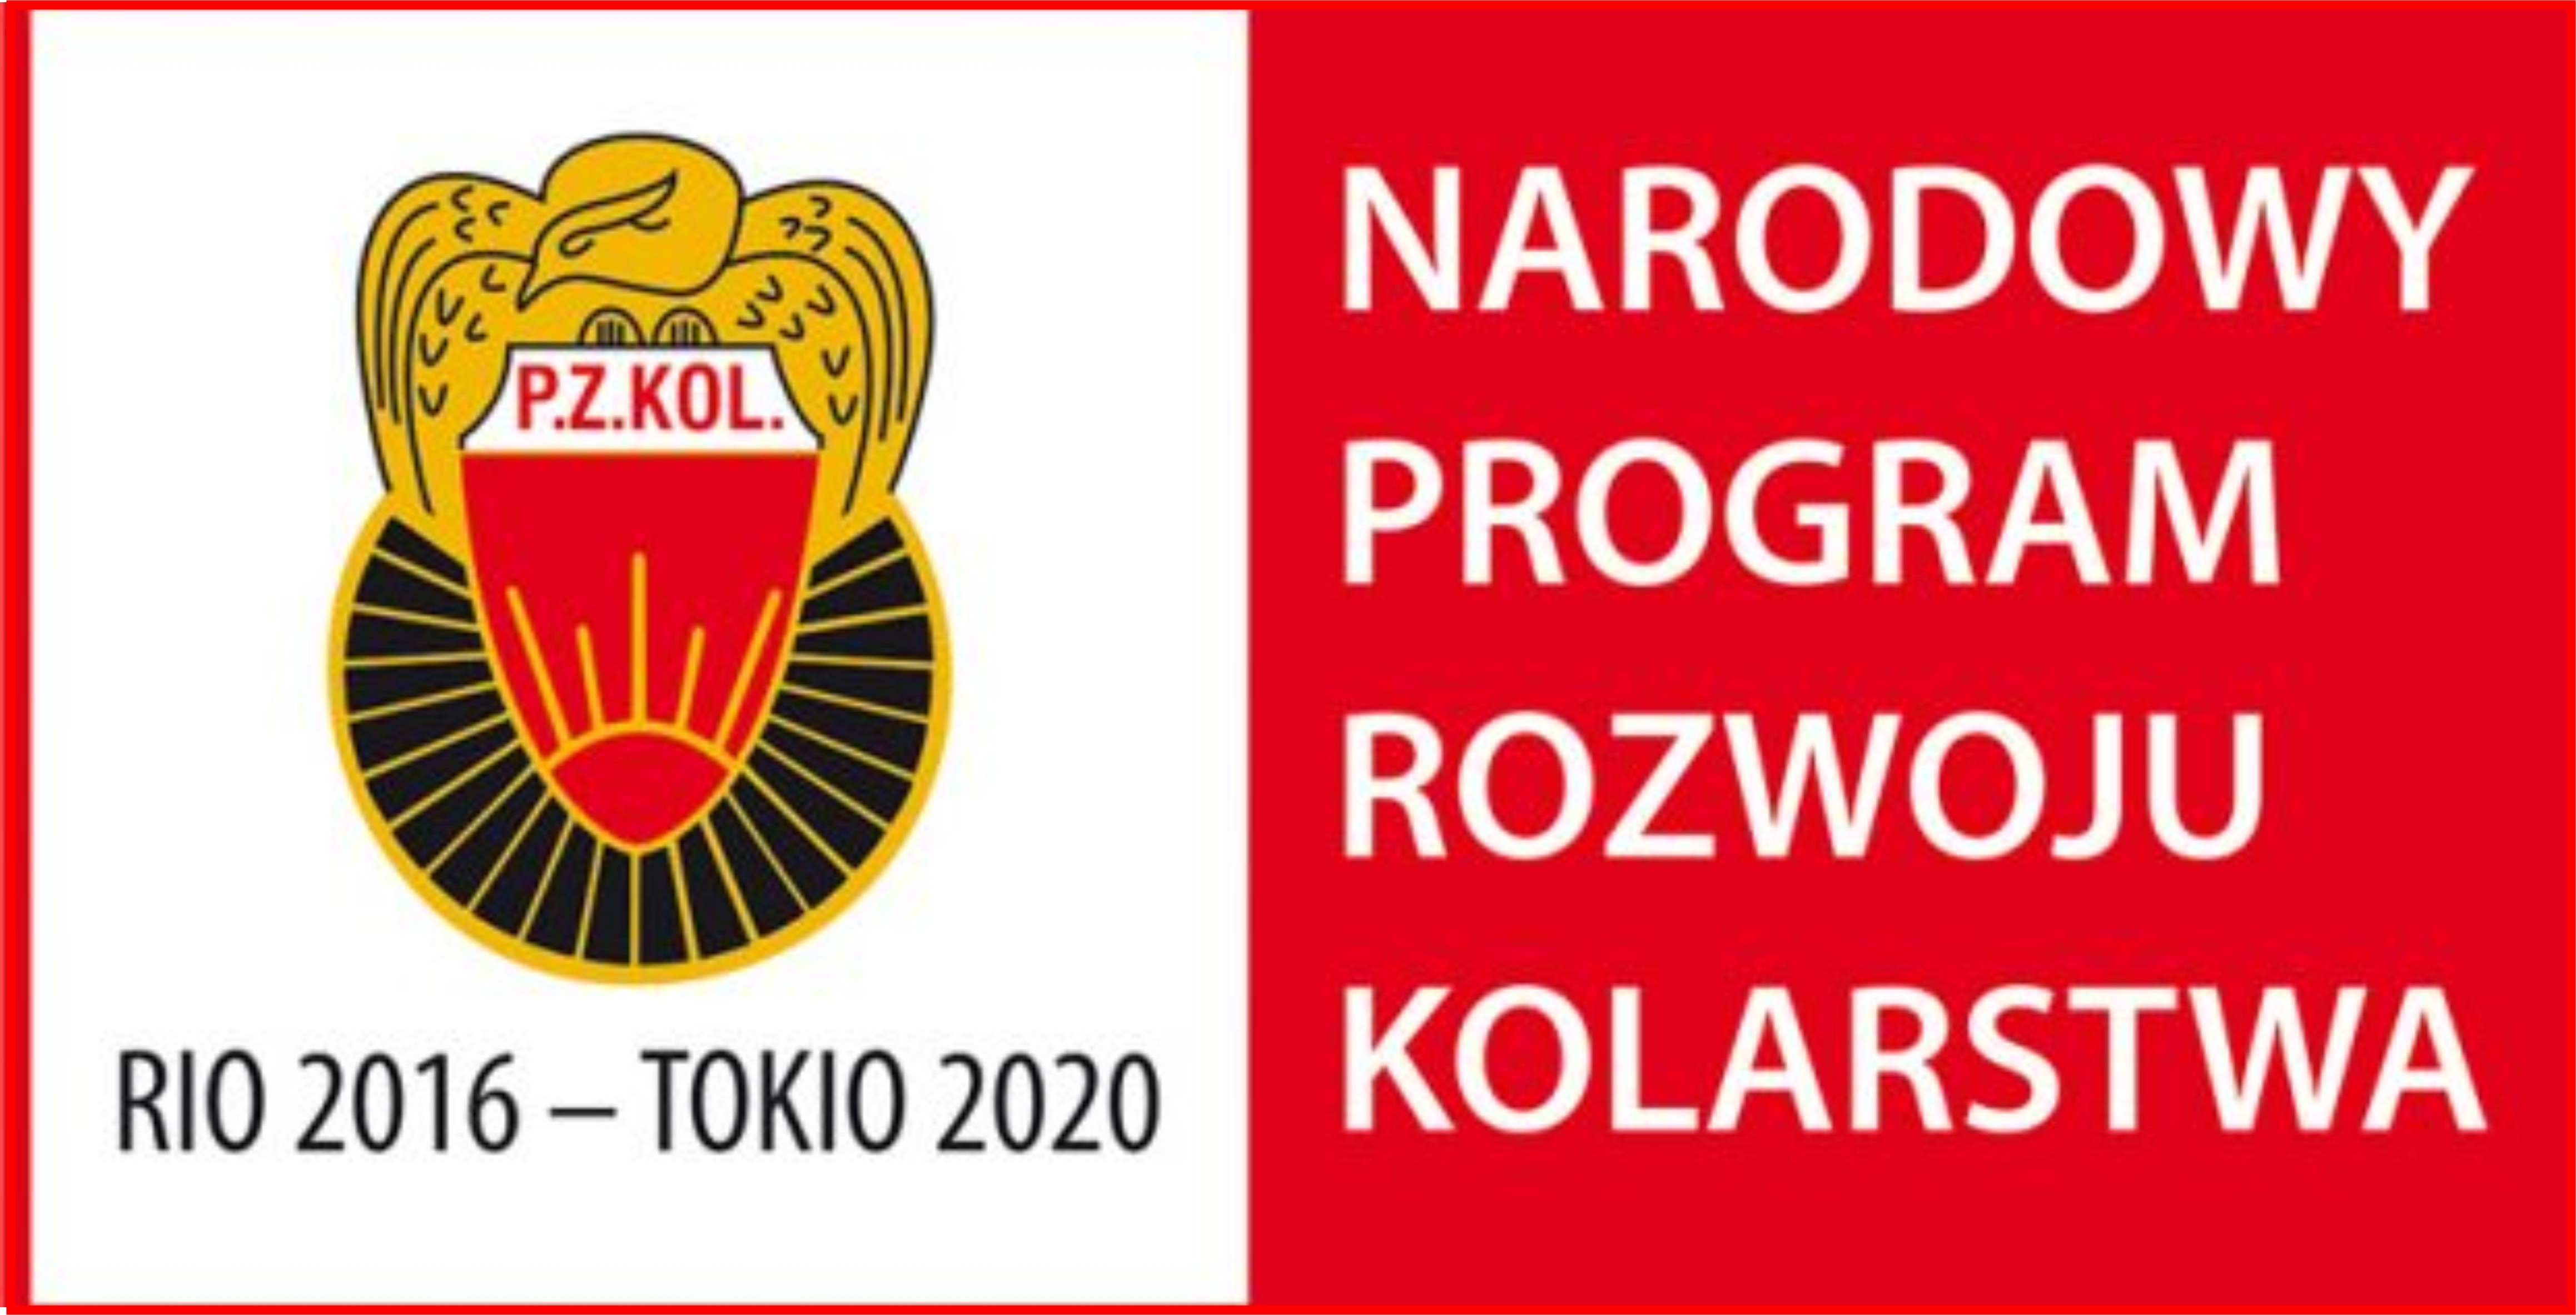 http://szkolkikolarskie.pl/wp-content/uploads/2018/05/NPRK-logo-programu.jpg